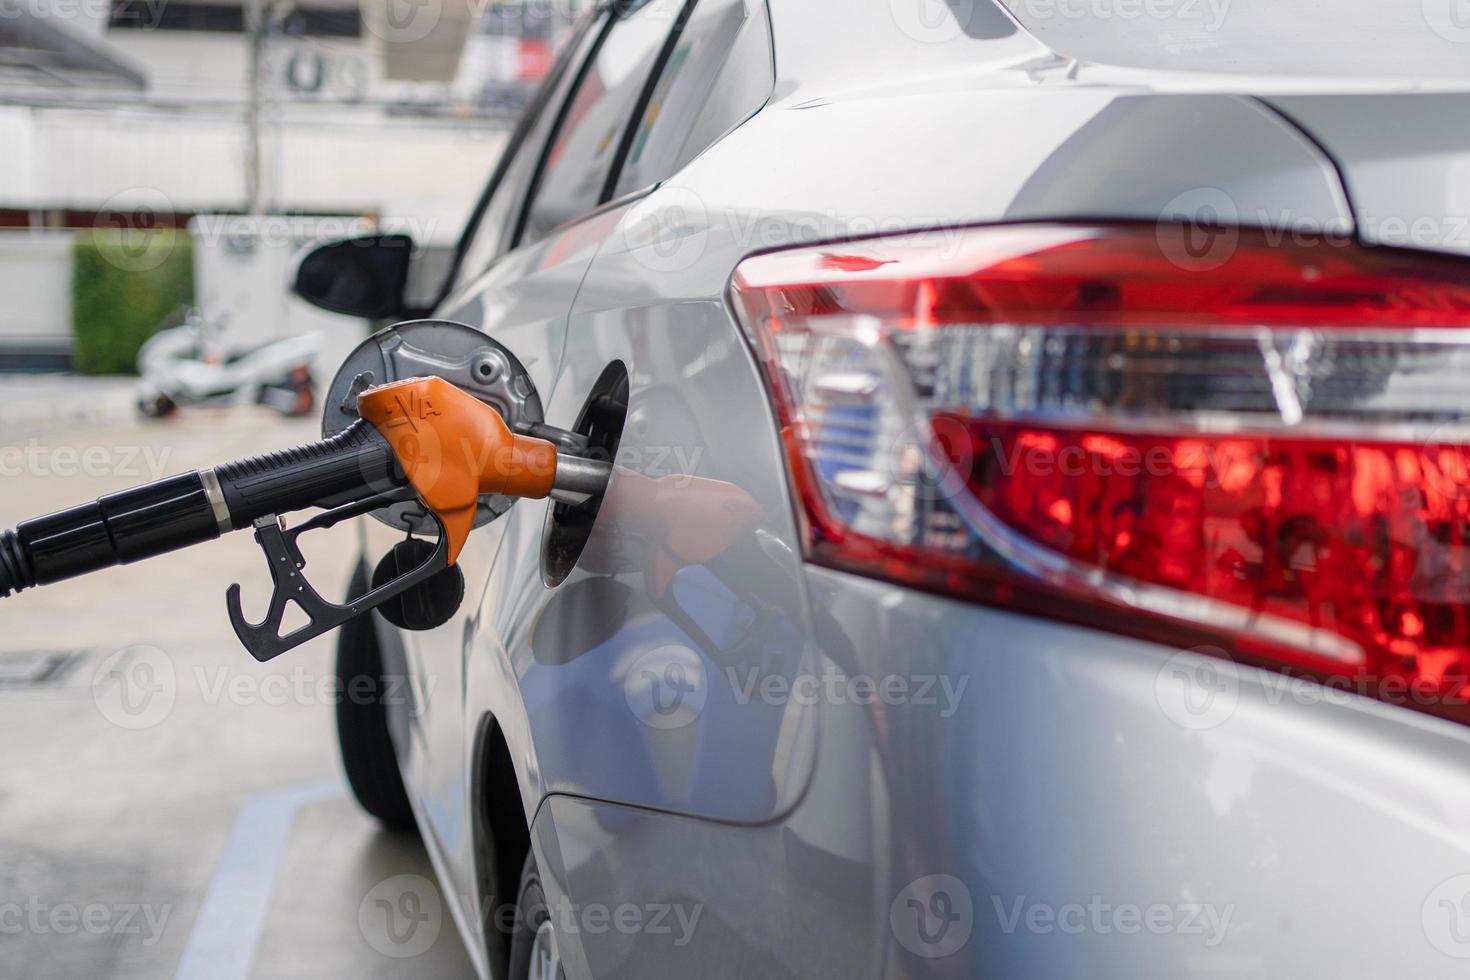 Pumpen von Benzinkraftstoff im Auto an der Tankstelle. Reise- und Transportkonzept. foto